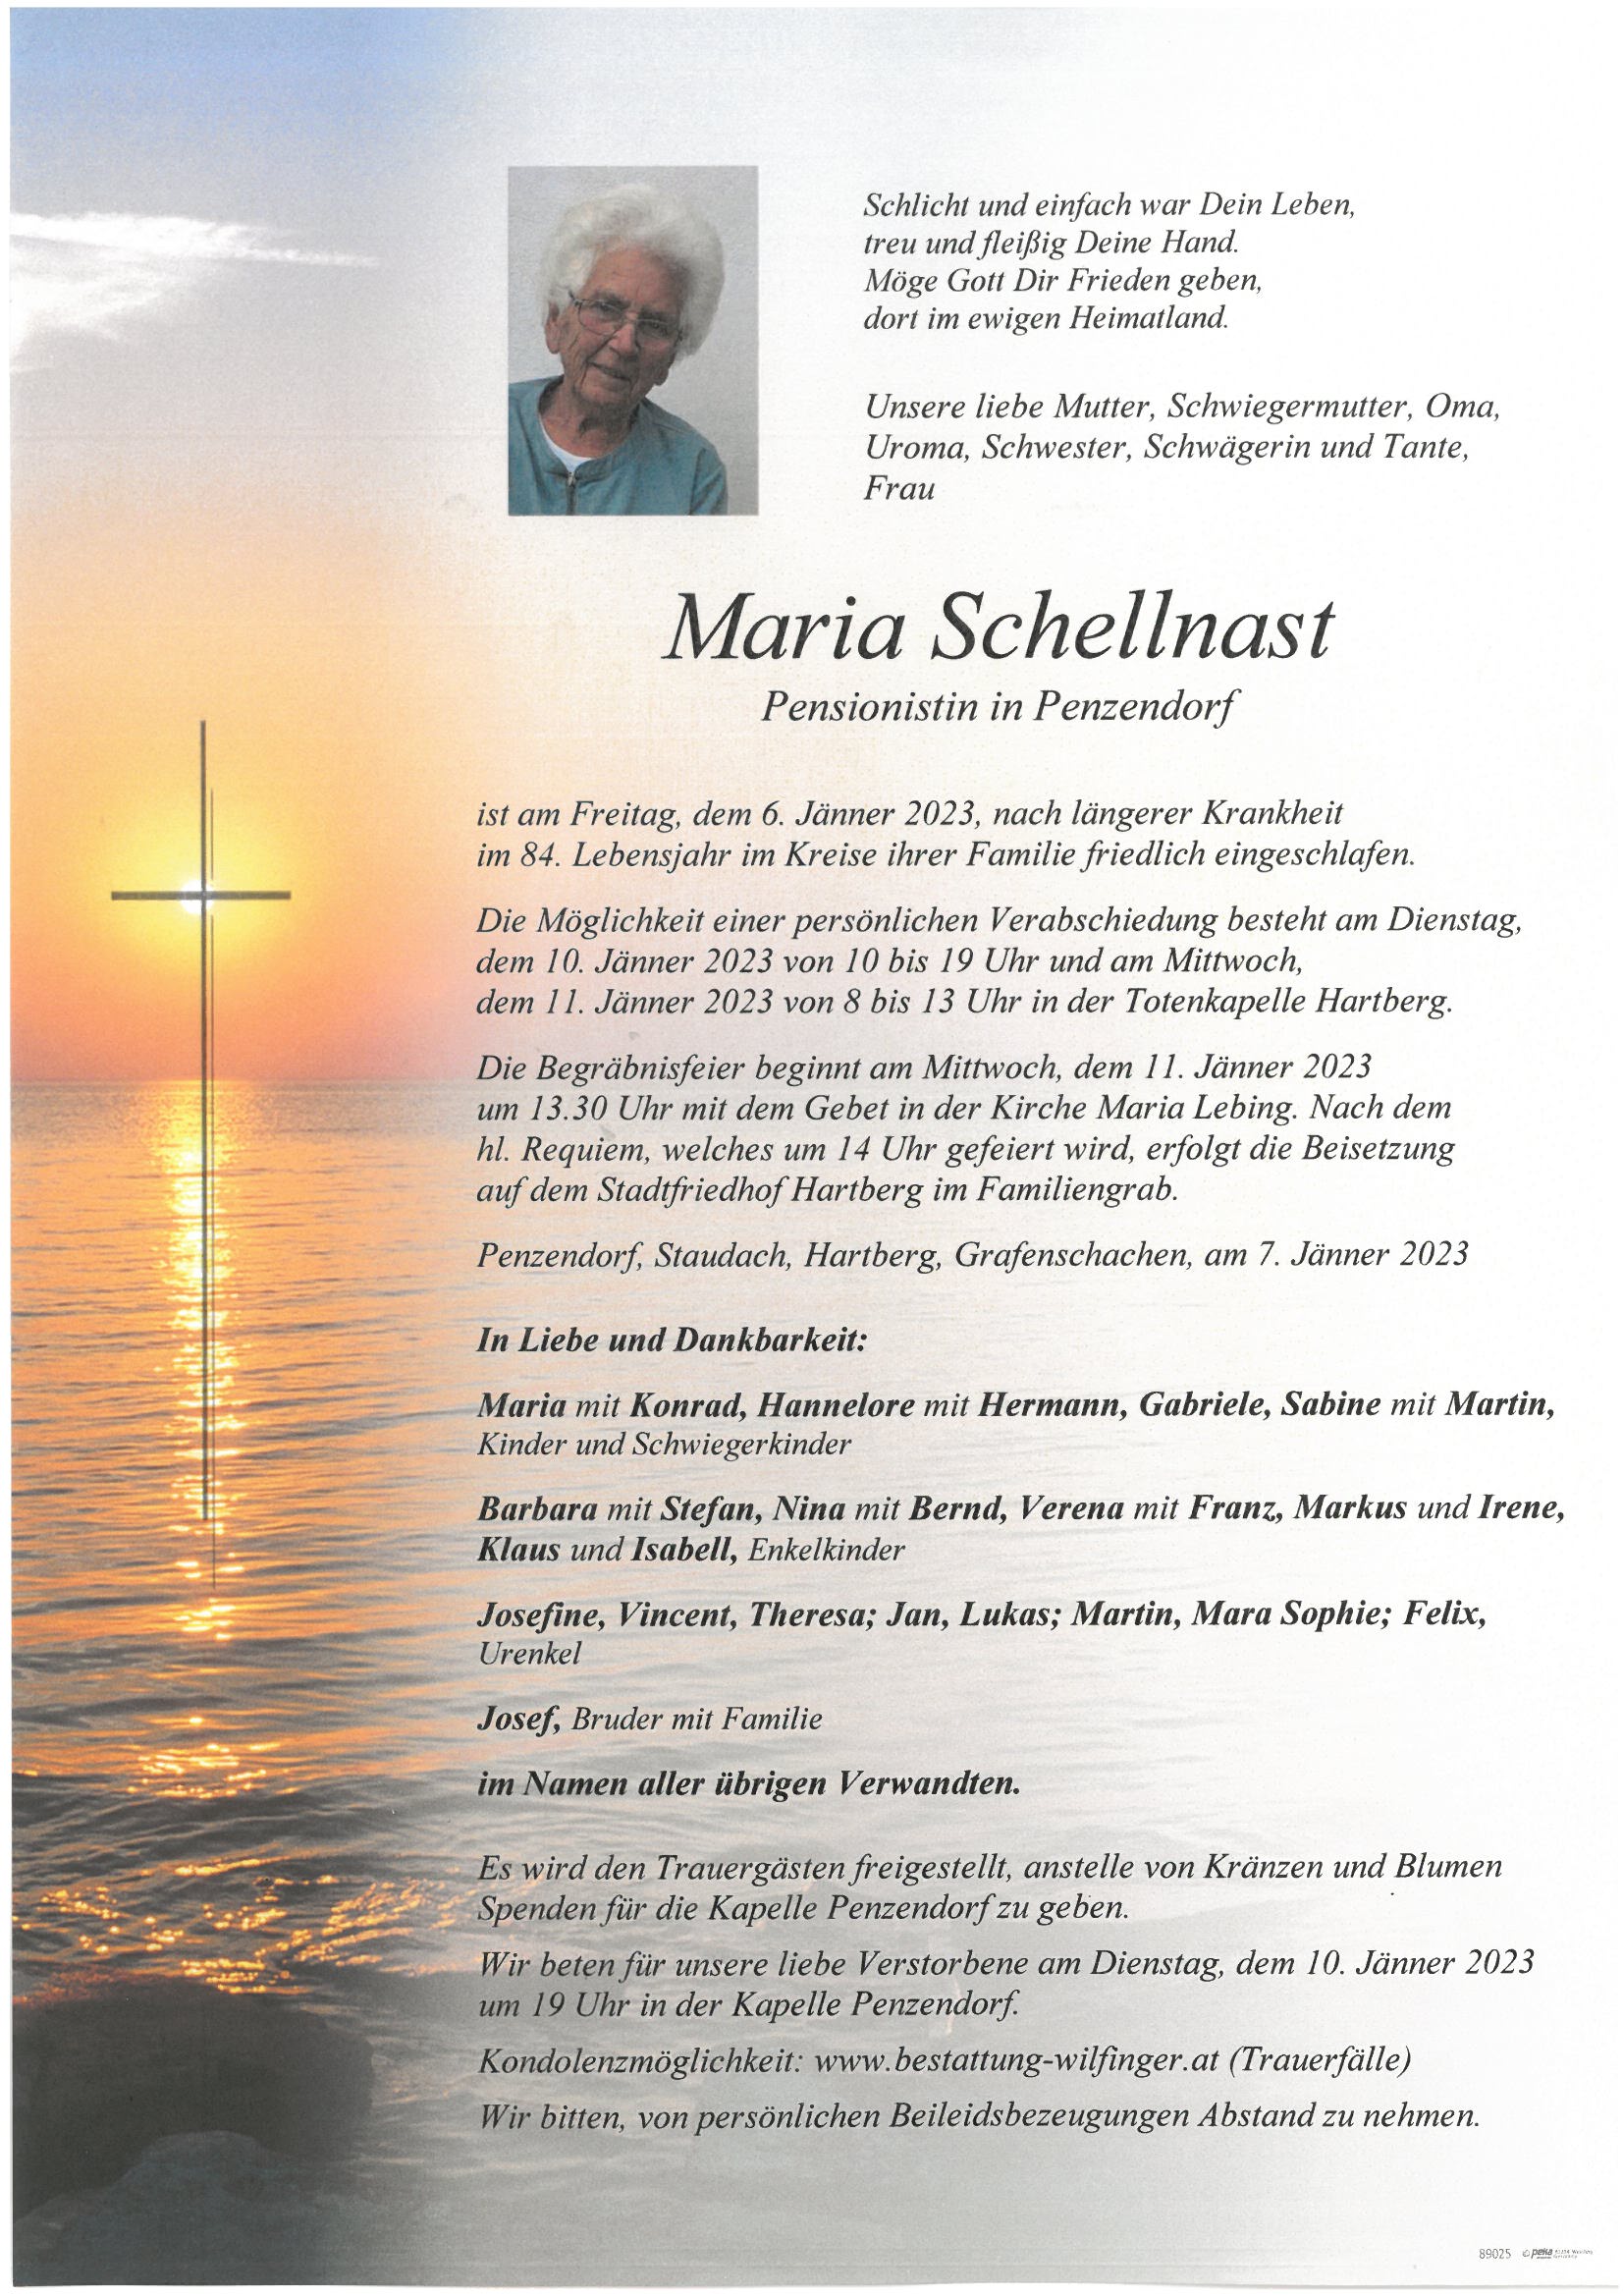 Maria Schellnast, Penzendorf